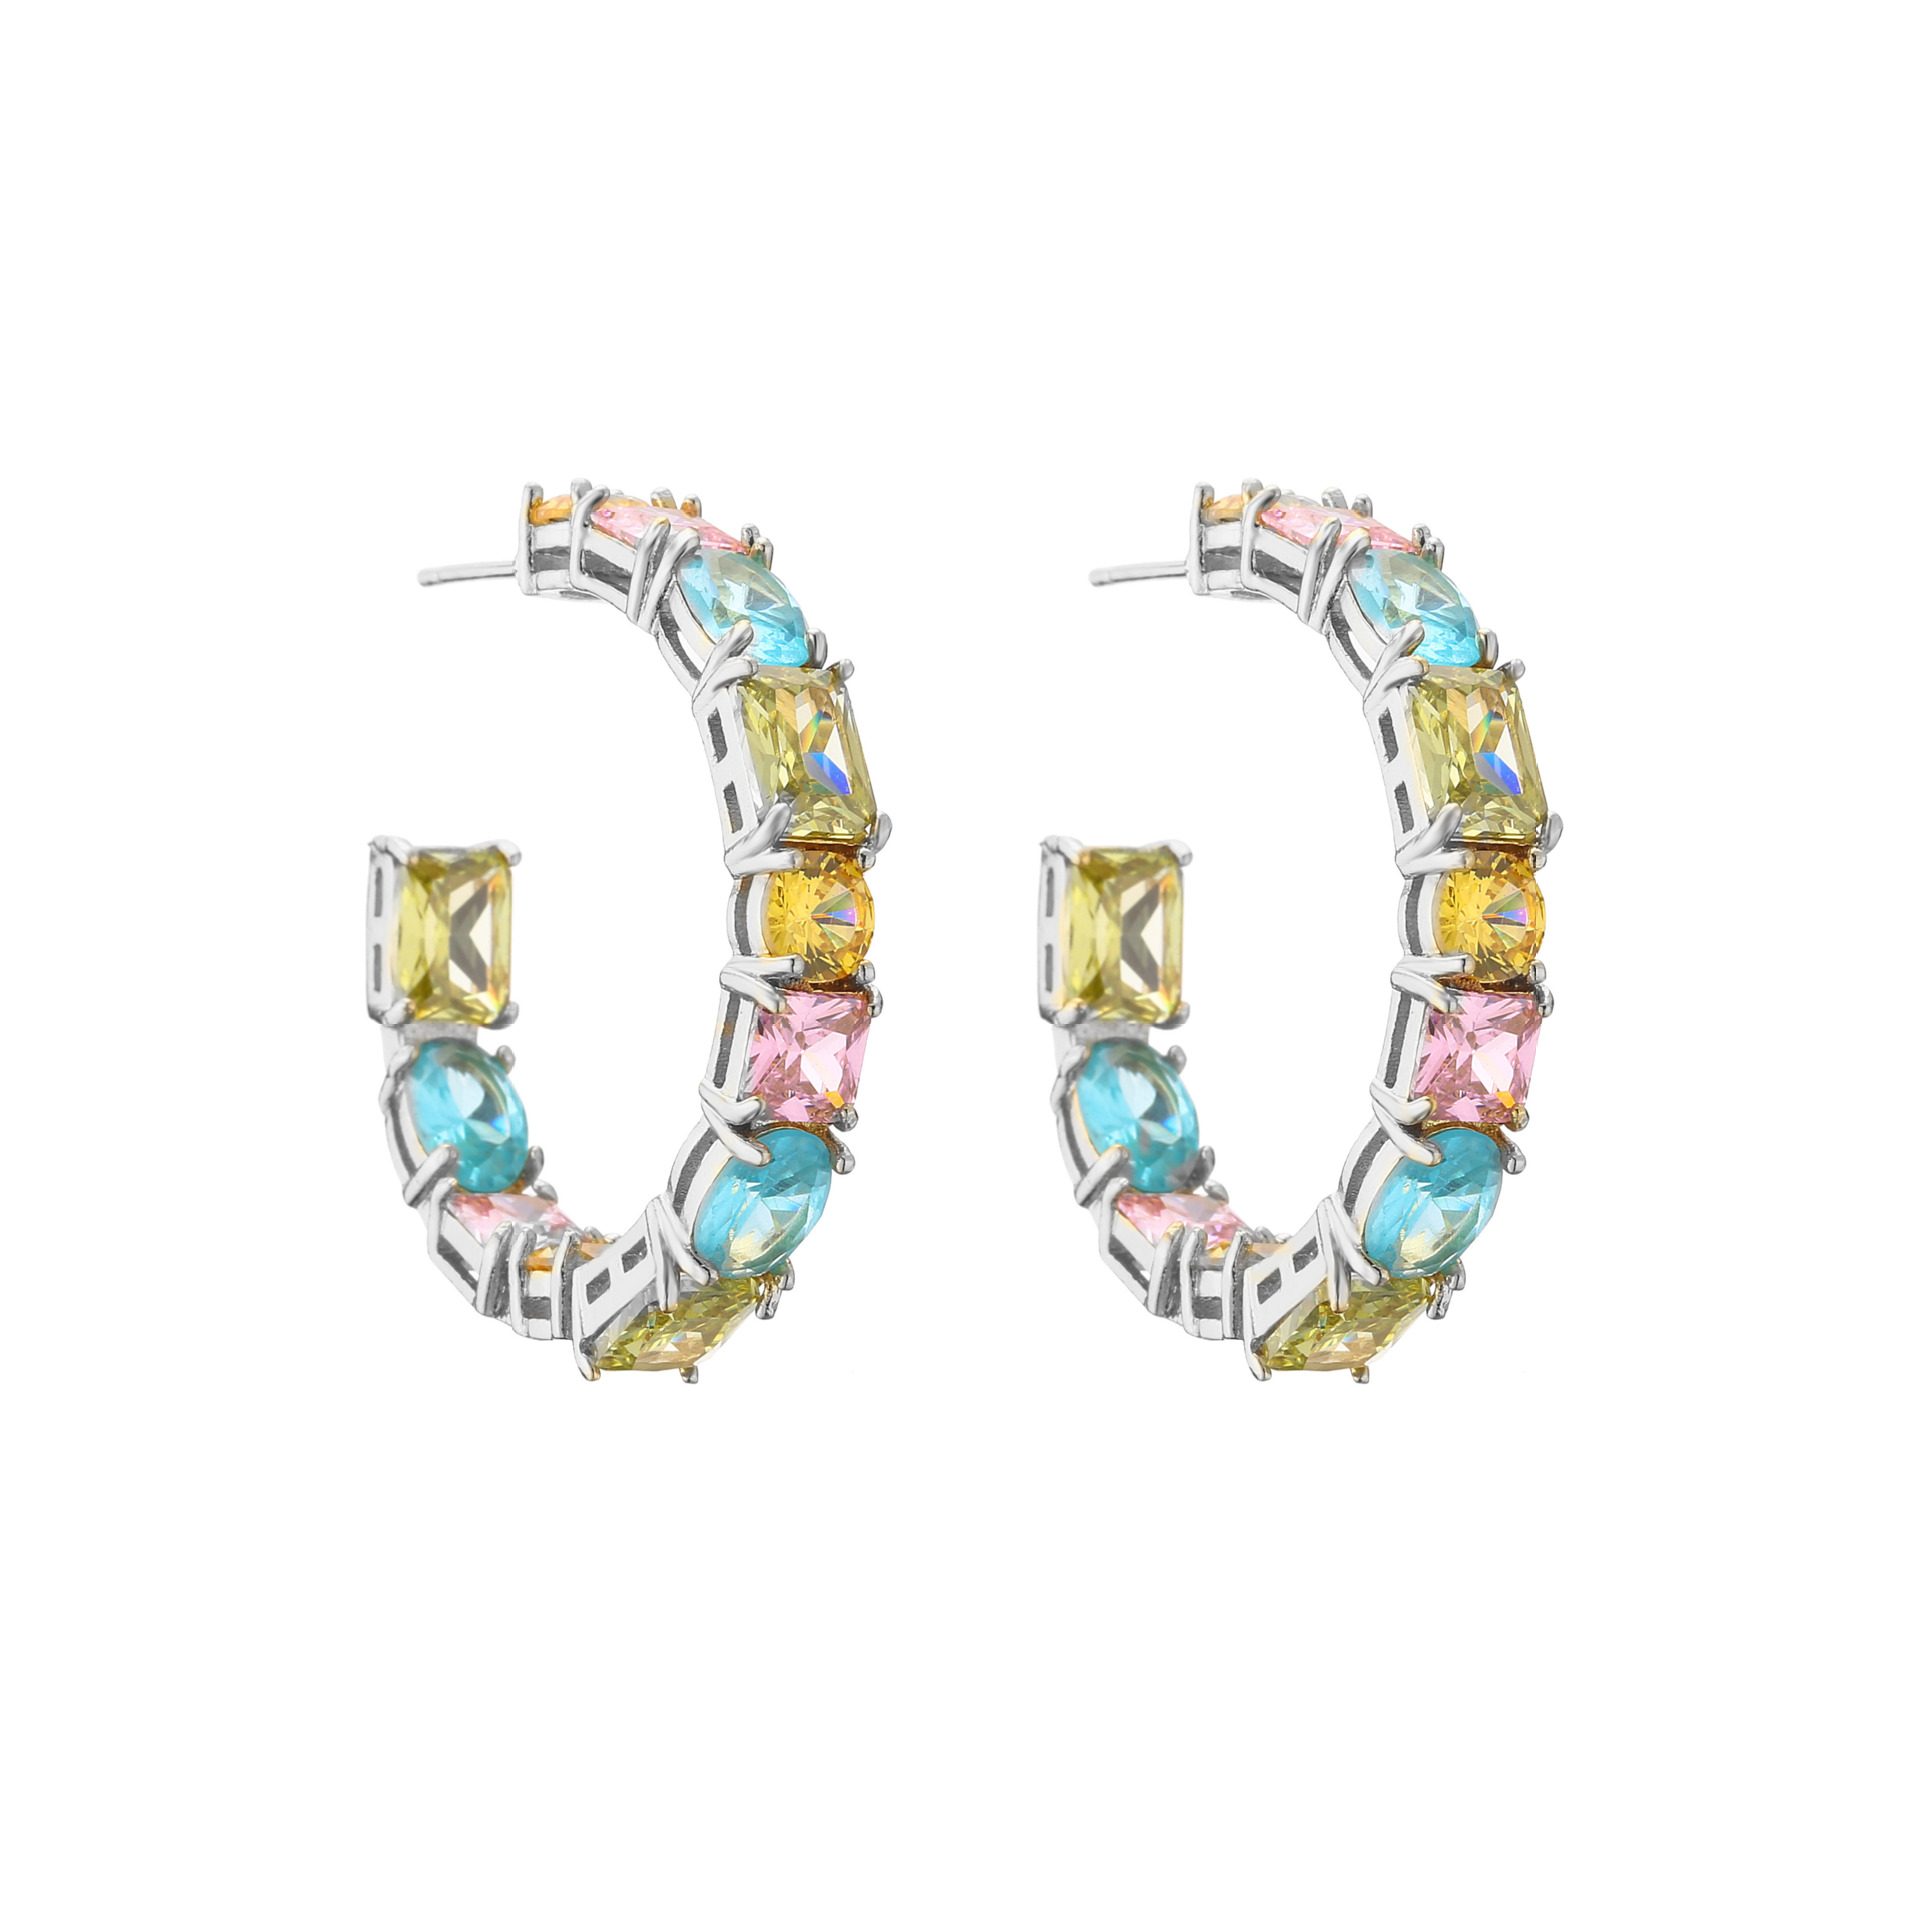 4:White Gold Earrings 1 pair